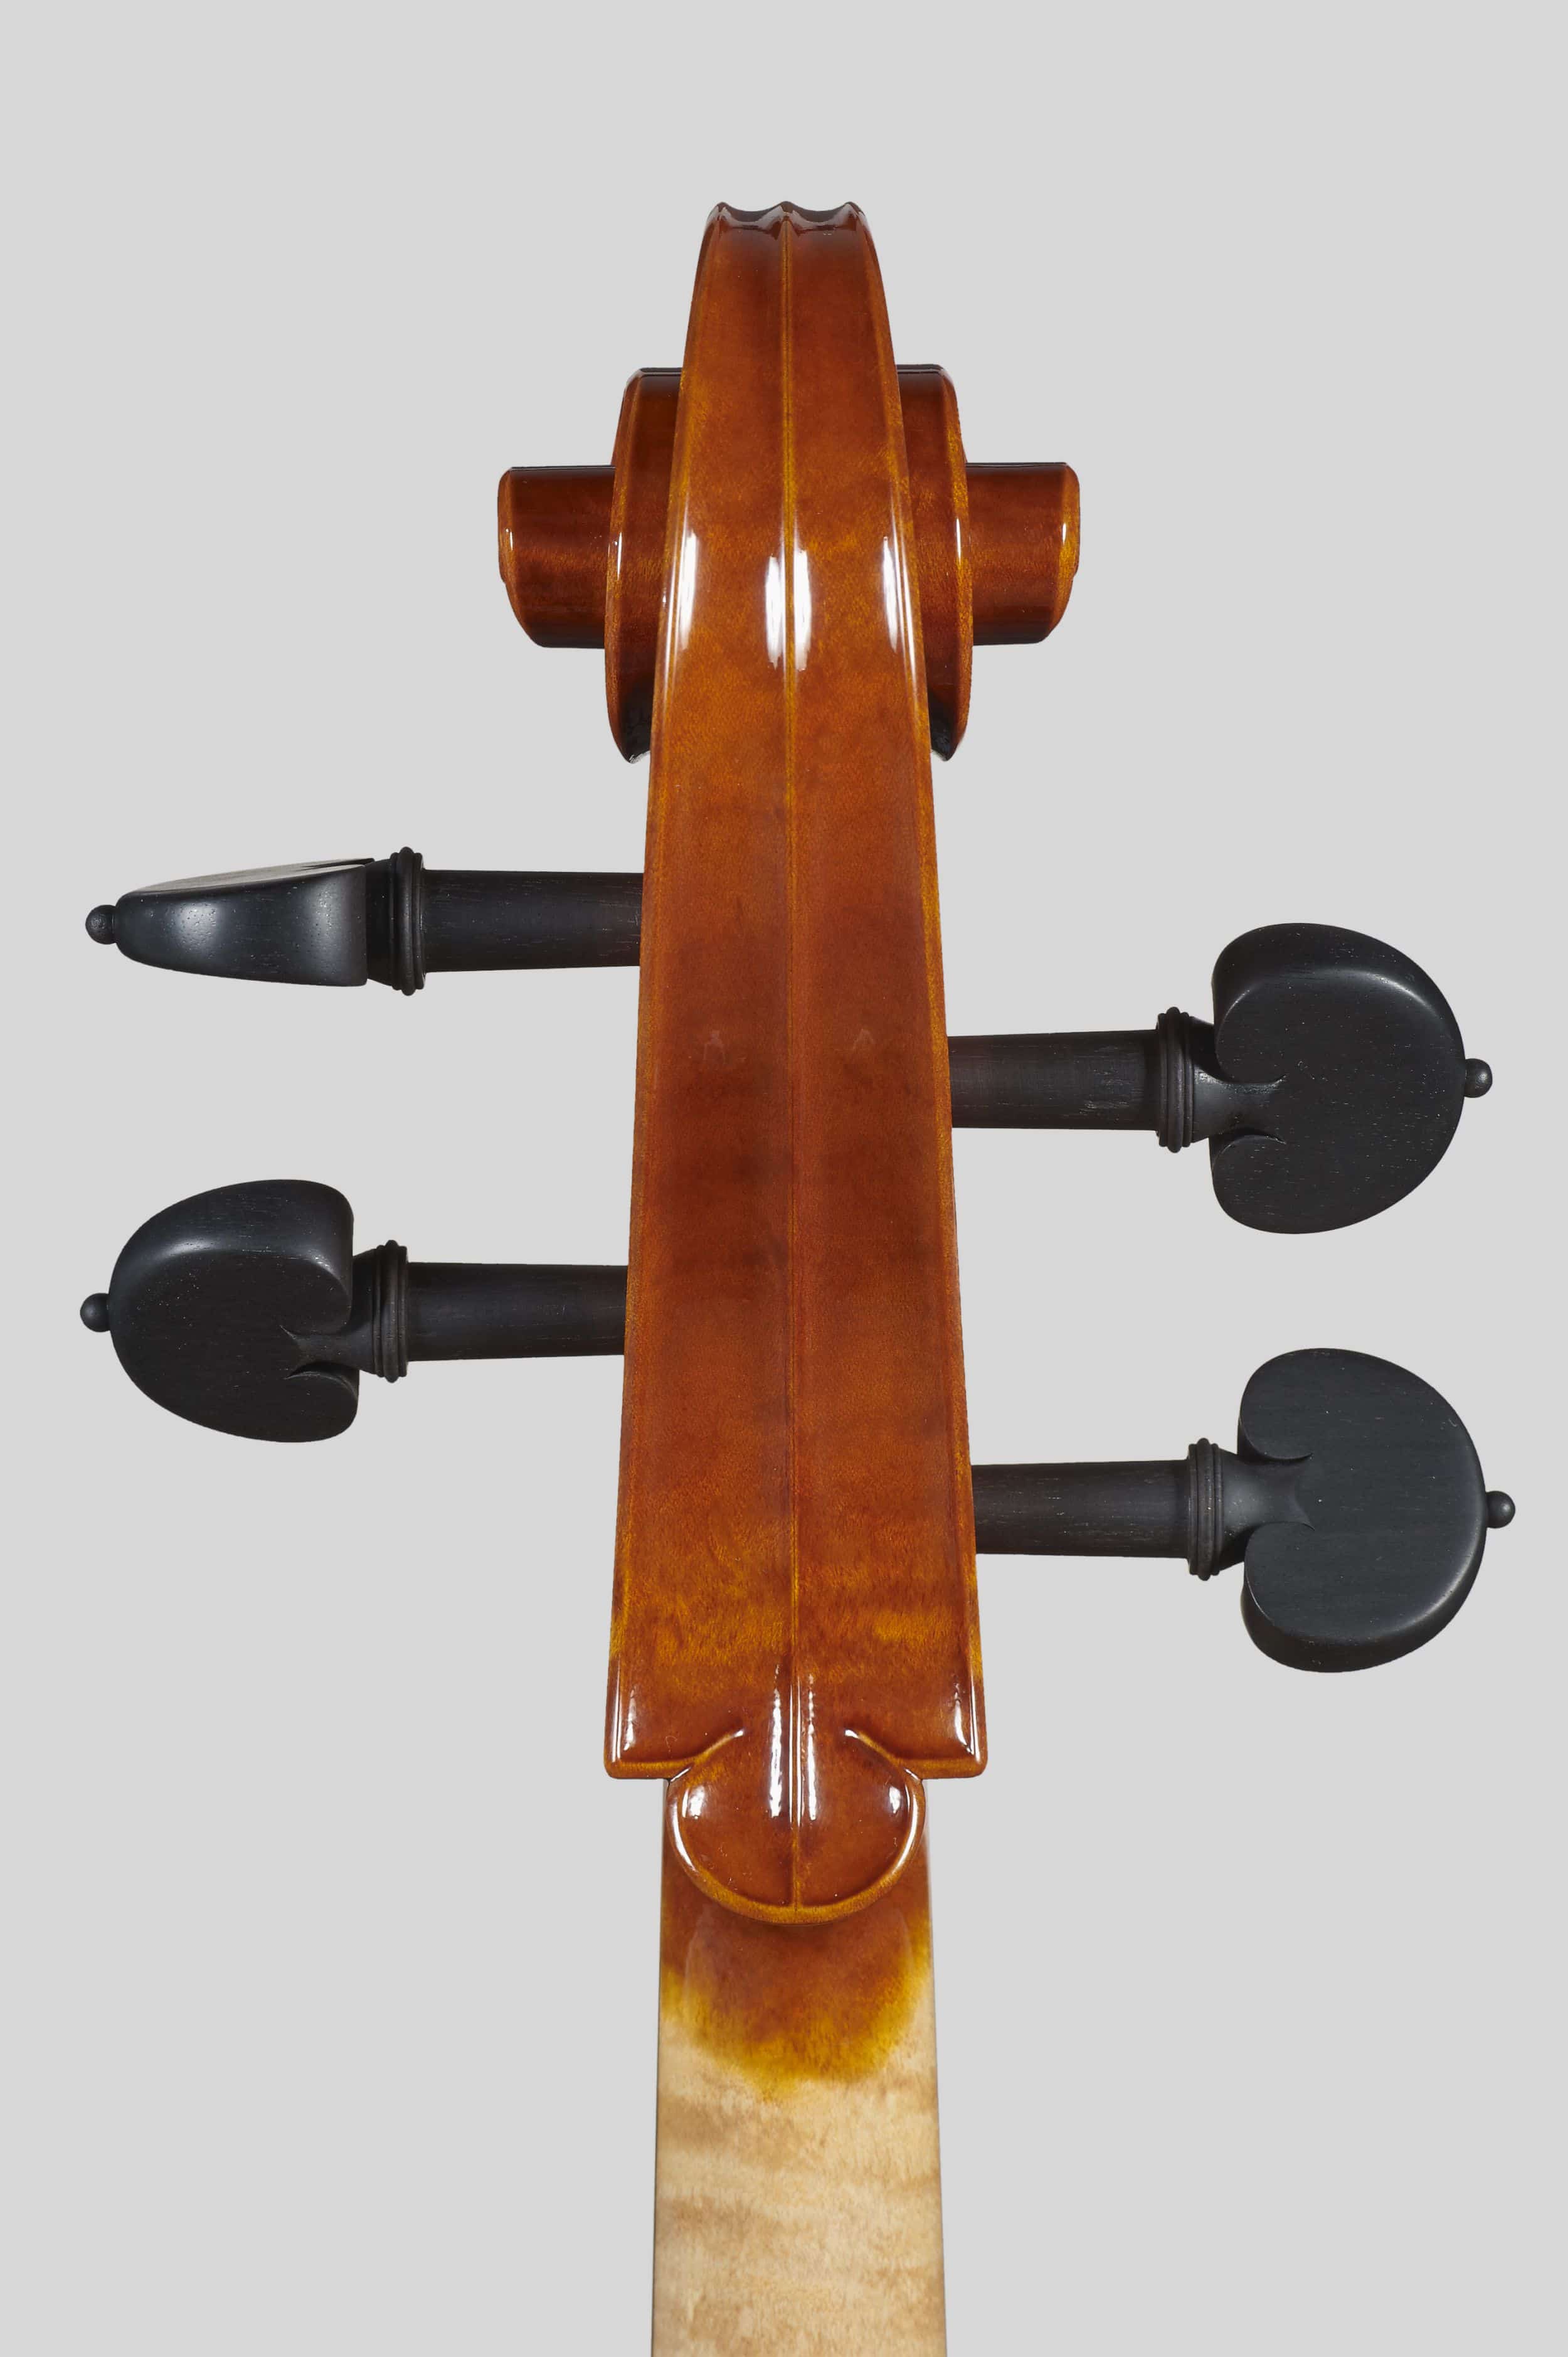 Anno 2012 – Violoncello modello stile A. Stradivari “forma B” - “Mara” 1711 - Testa retro